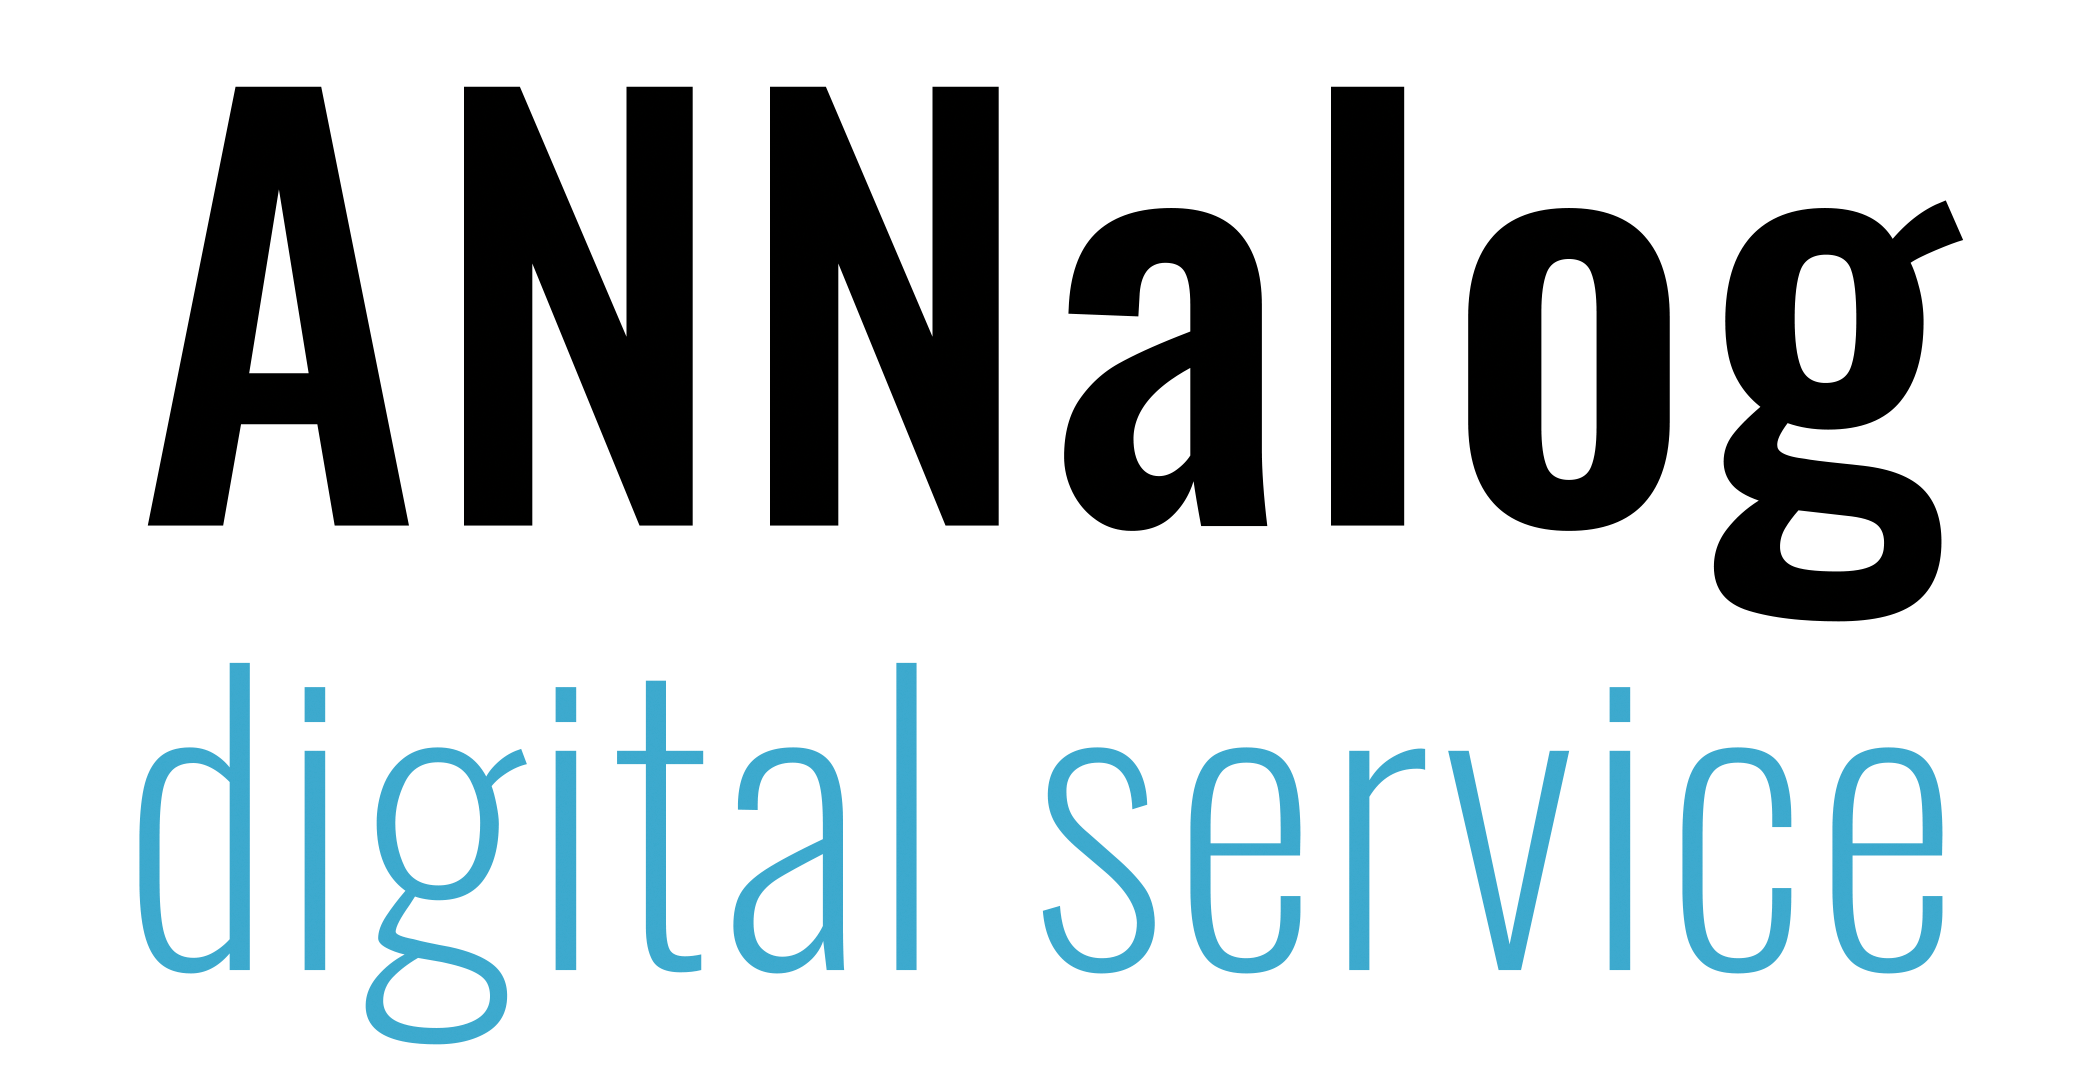 ANNalog digital service